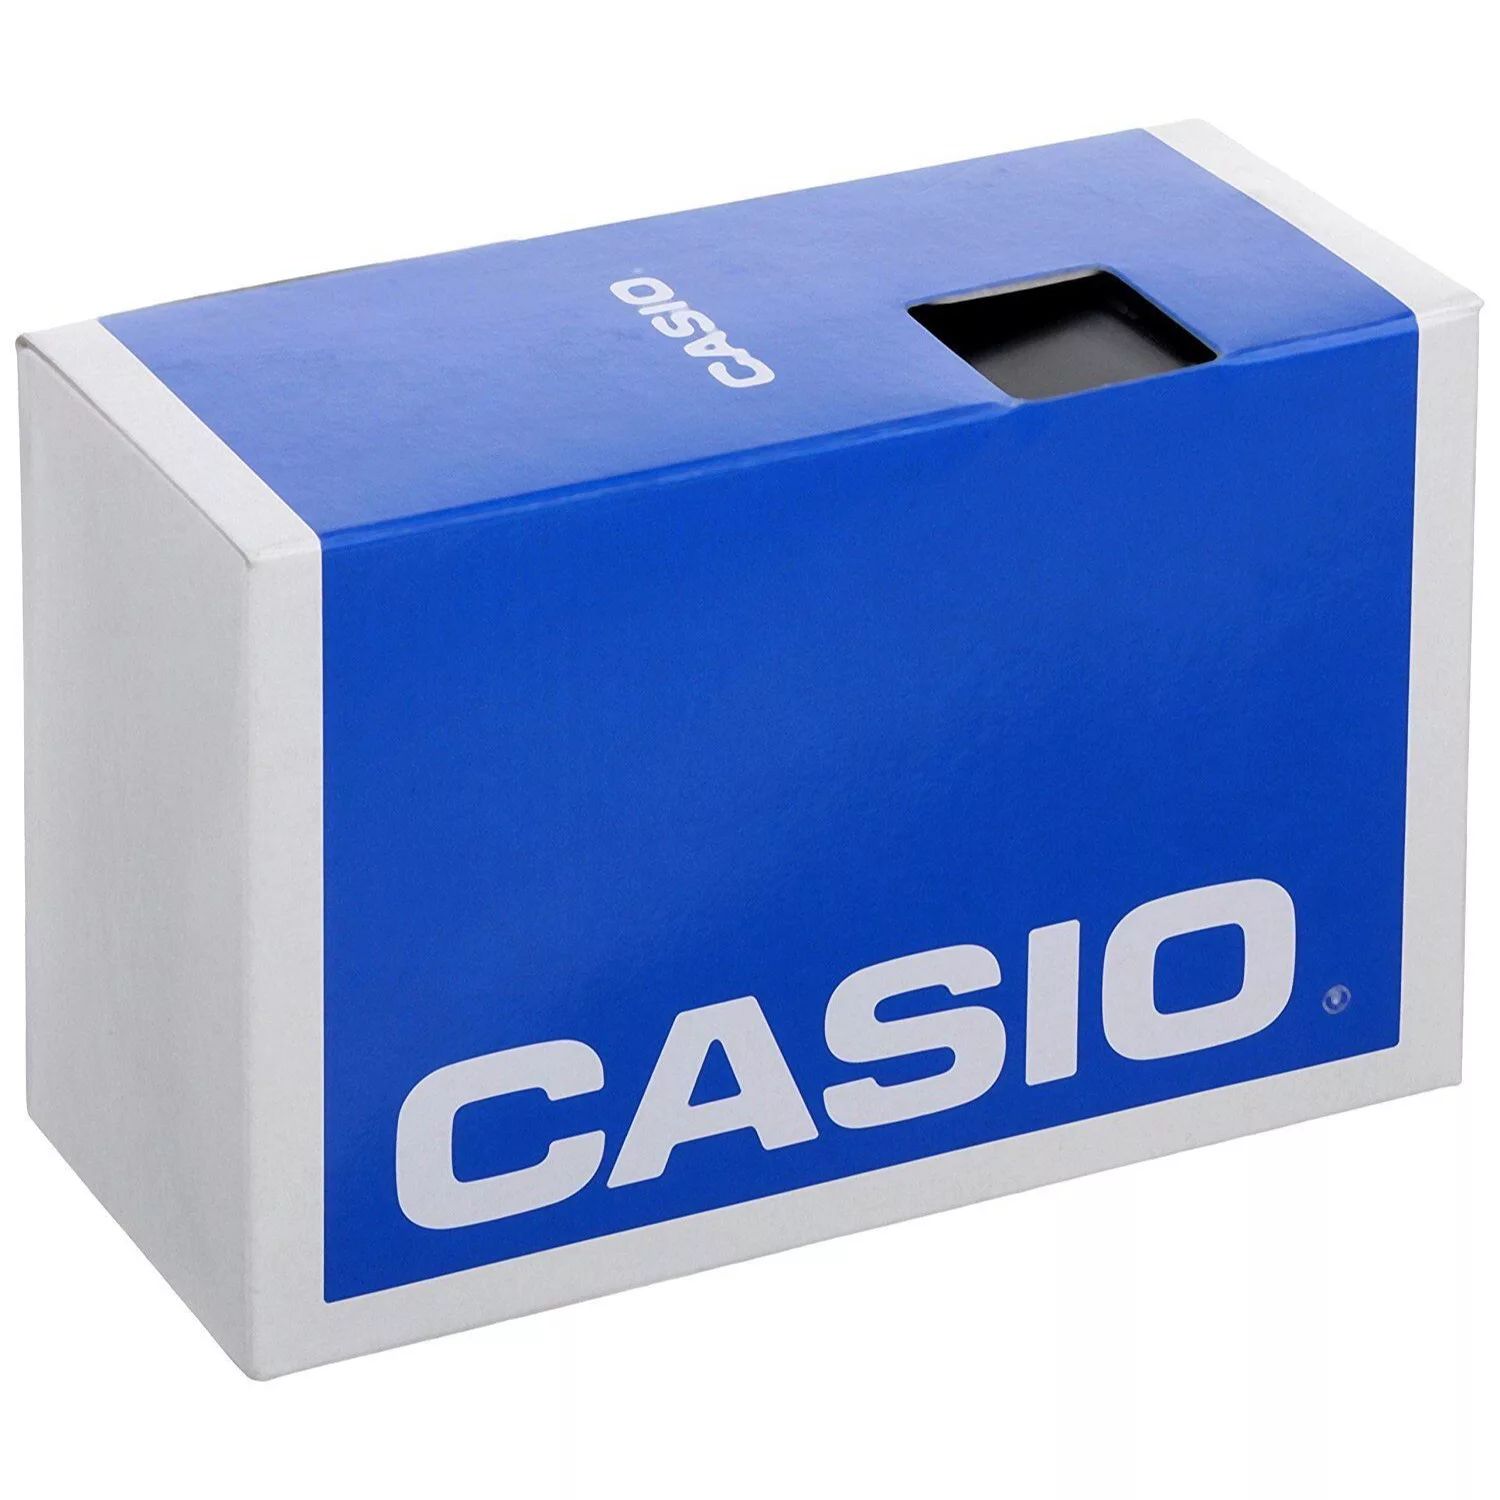 Мужские сверхмощные металлические цифровые часы Casio цена и фото